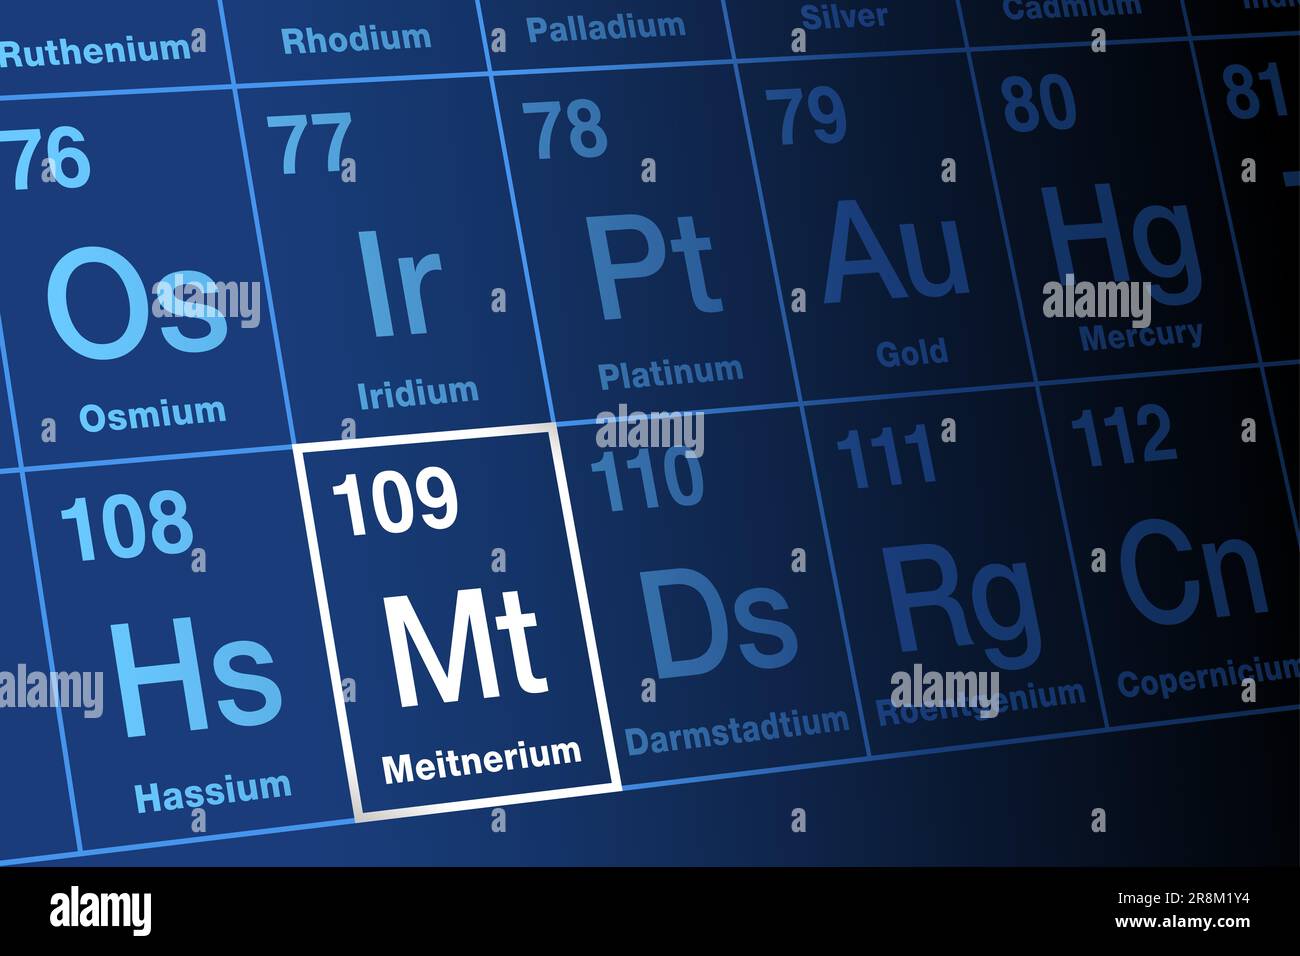 Meitnerium, auf dem Periodensystem. Extrem radioaktives, superschweres, synthetisches Transaktinid-Element, mit Elementsymbol Mt und Atomzahl 109. Stockfoto